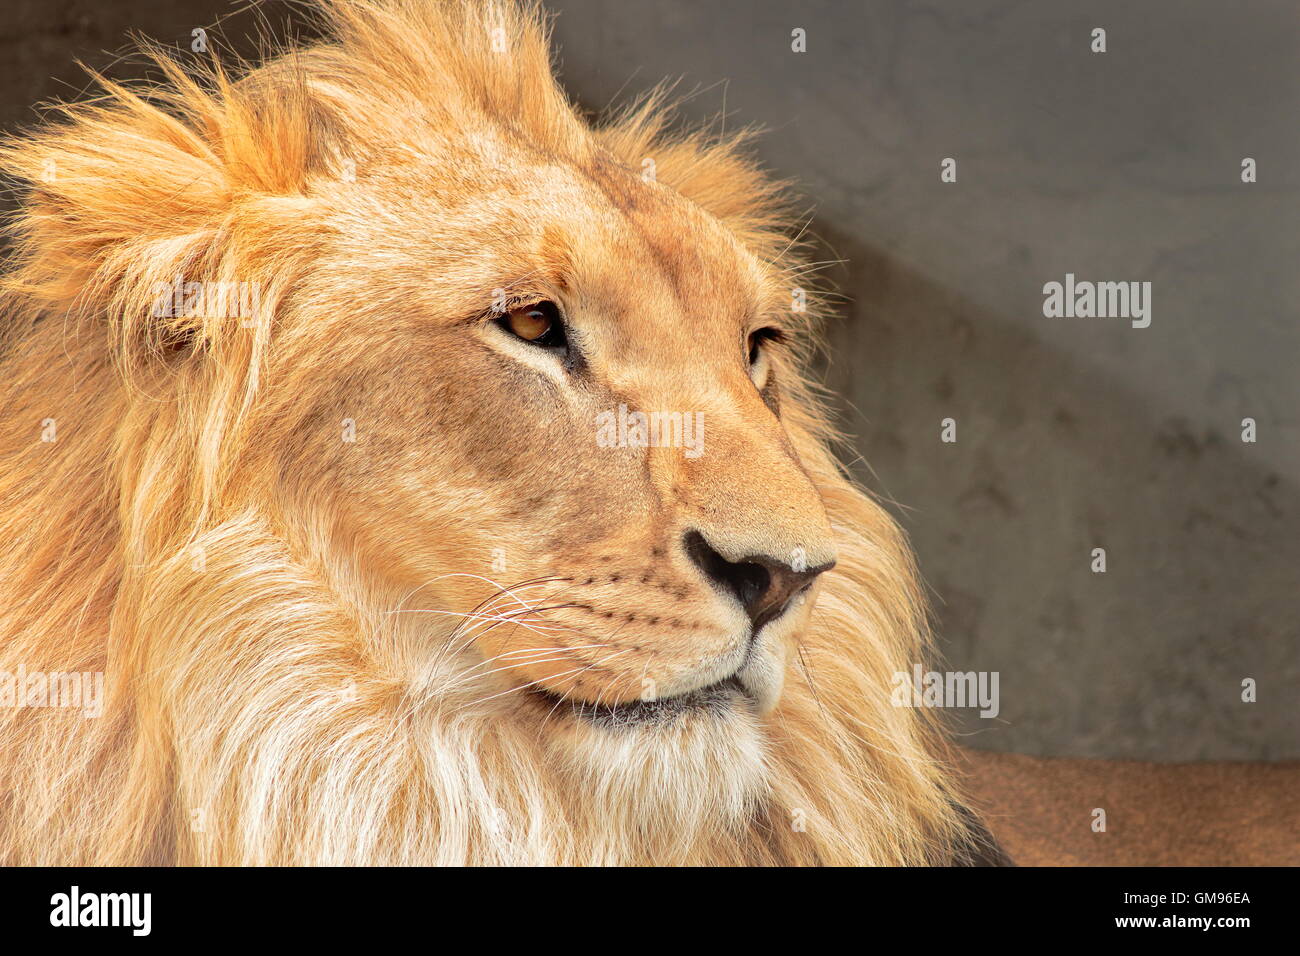 El León (Panthera Leo) es un Mamífero Carnívoro De La Familia de Los Félidos y Una de las Cinco Malpelo del Género Panthera. Stockfoto